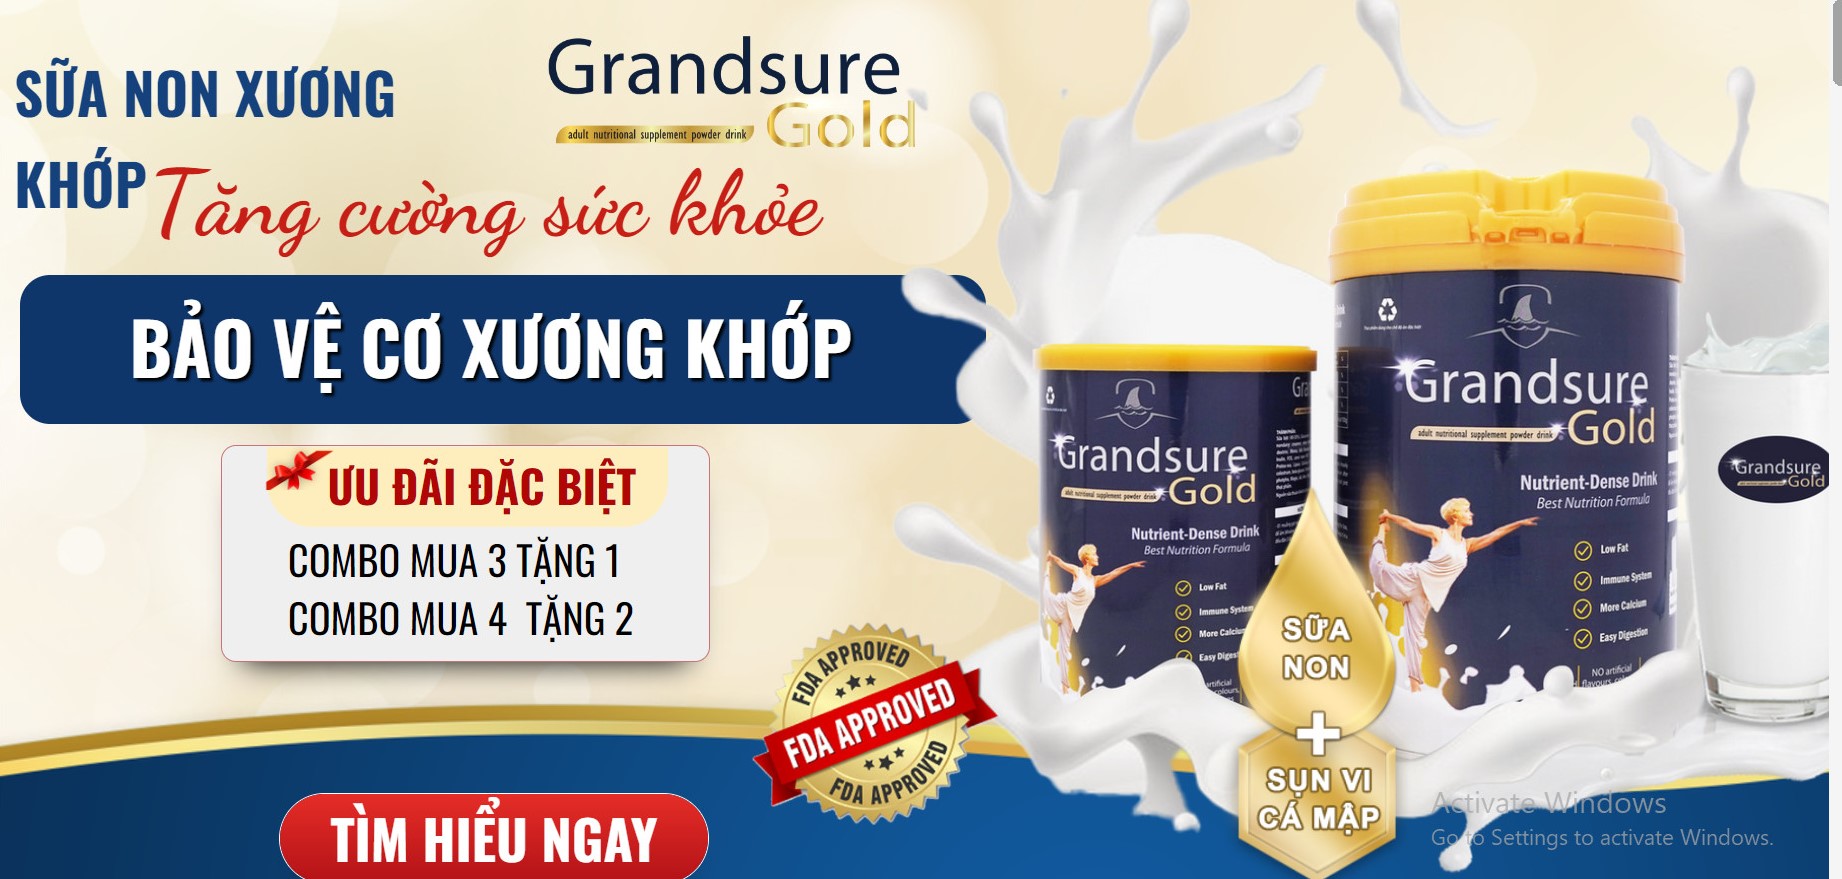  Sữa non GrandSure Gold quảng cáo có dấu hiệu lừa dối người dùng.